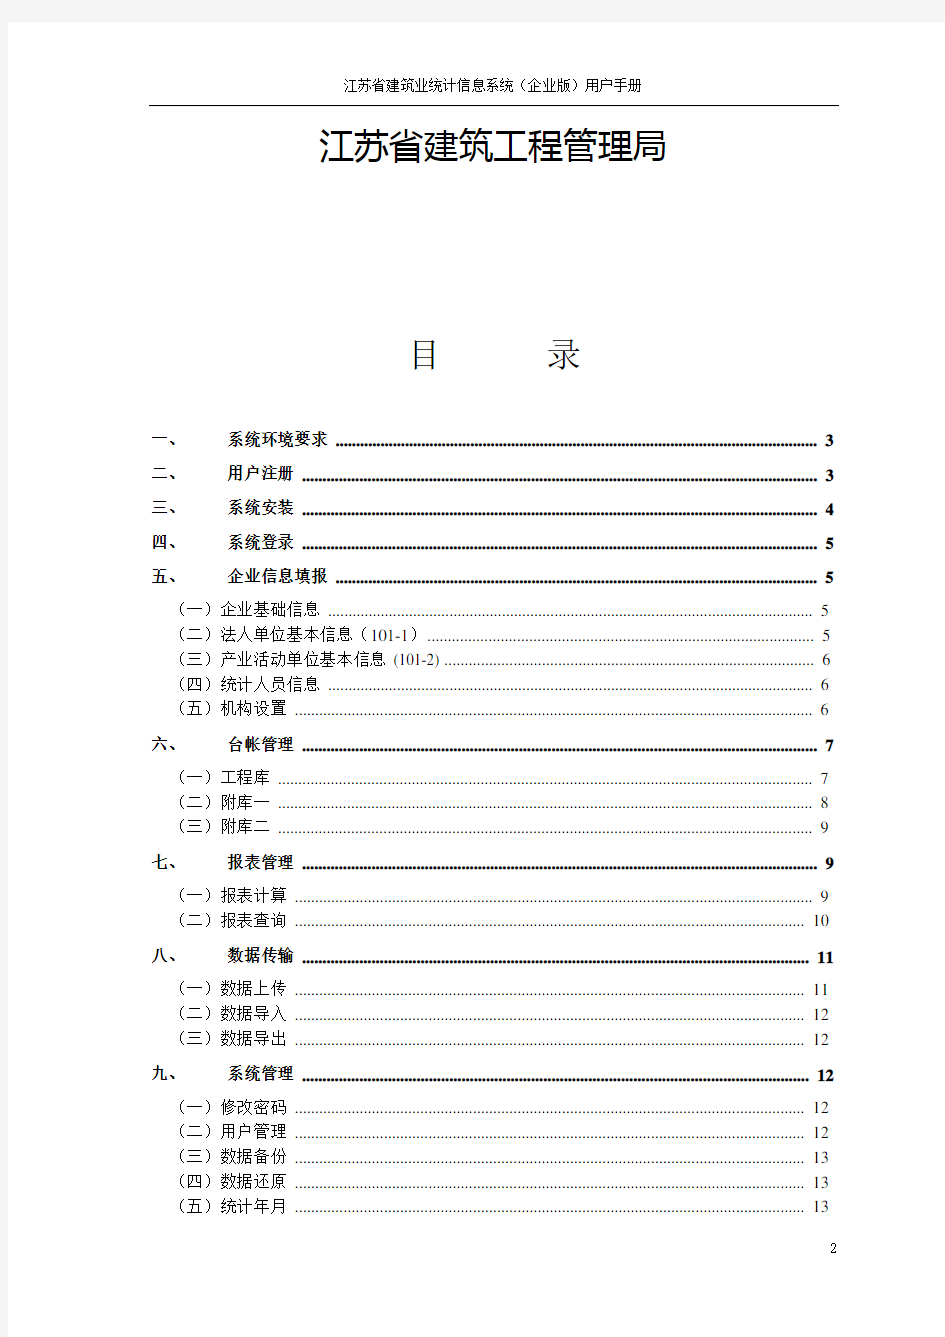 江苏省建筑业统计信息系统(企业版)用户手册